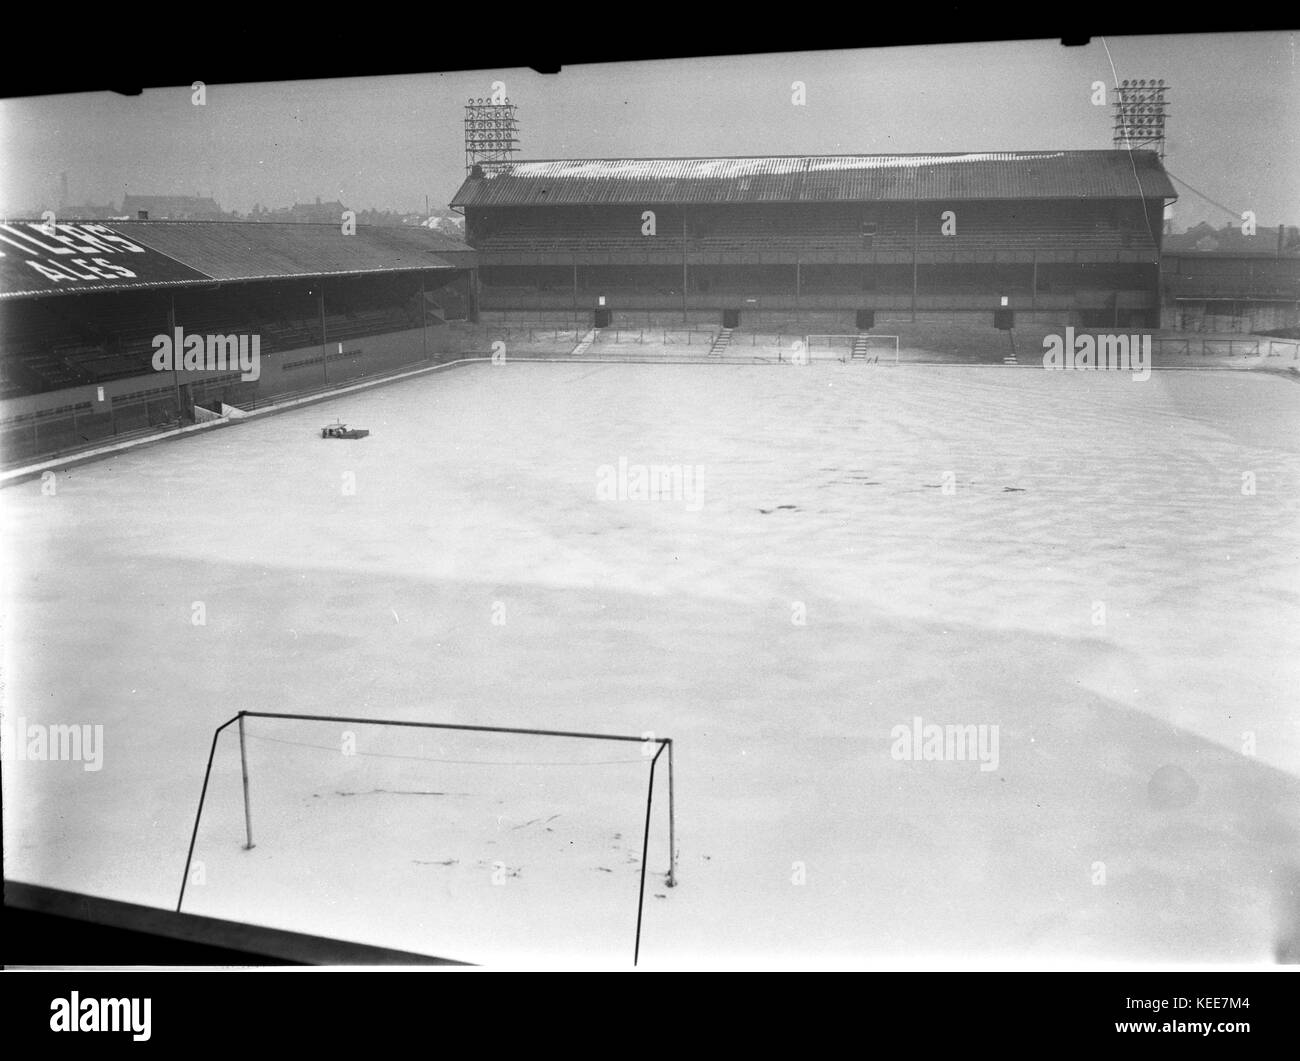 Derby County Football Club Stadion von 1895 bis 1997 - Das baseballstadium unter snowon vom 22. Januar 1963. Foto von Tony Henshaw *** Local Caption *** Von der 100-Original Negativ. Stockfoto